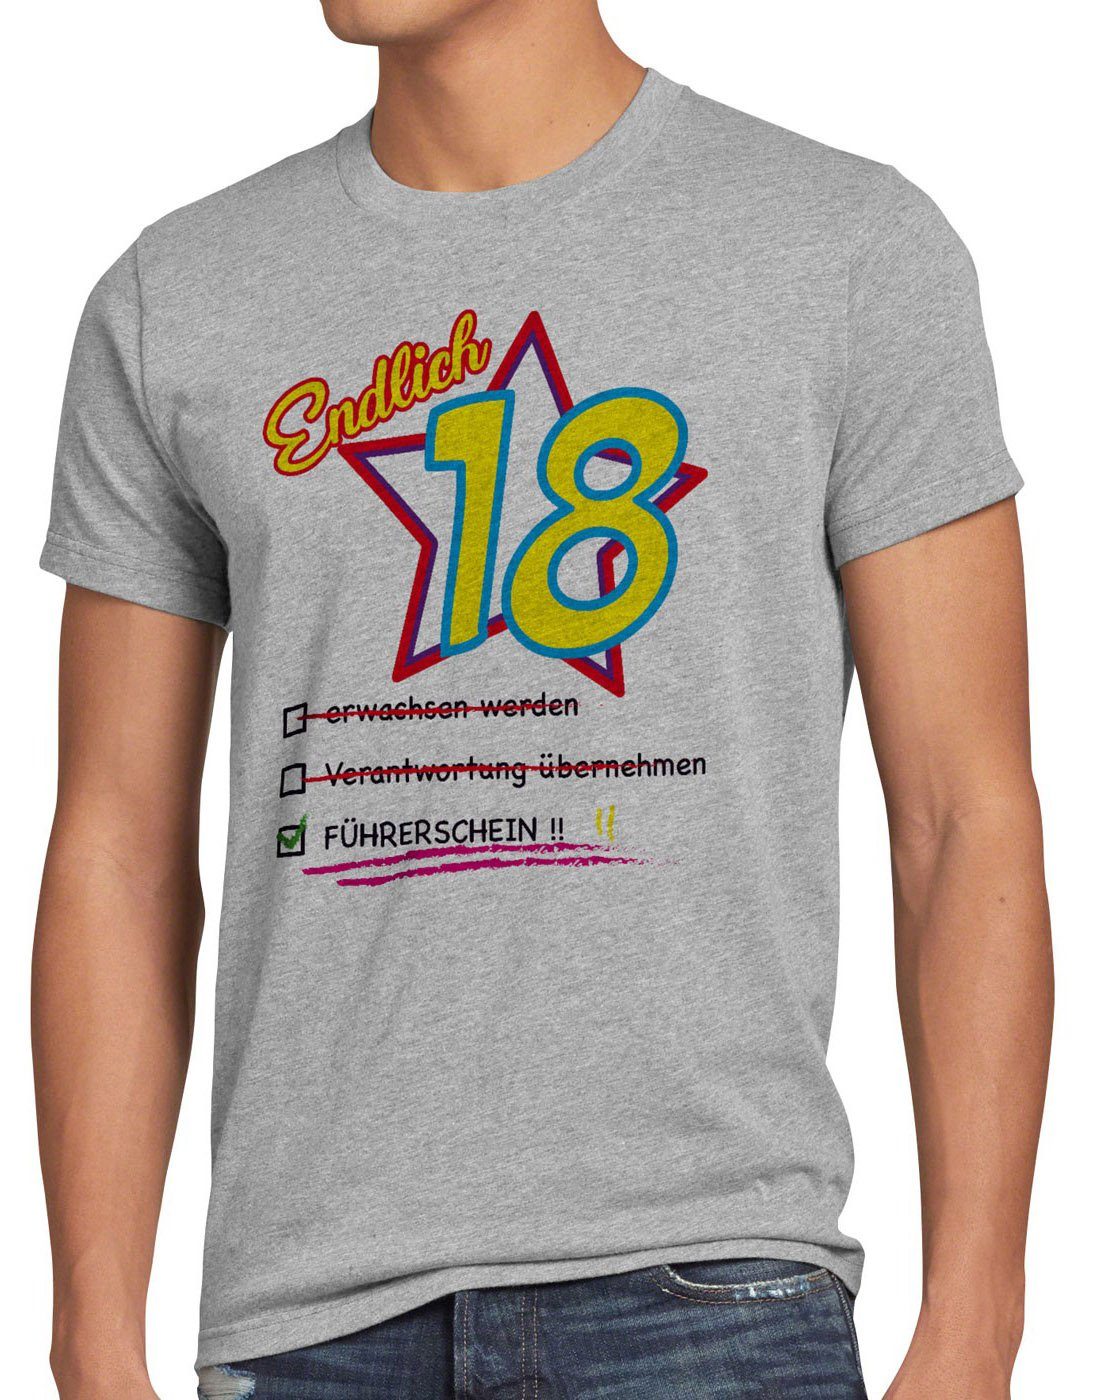 style3 Print-Shirt Herren T-Shirt Endlich 18 Führerschein Geburtstag Party Fun volljährig achtzehn grau meliert